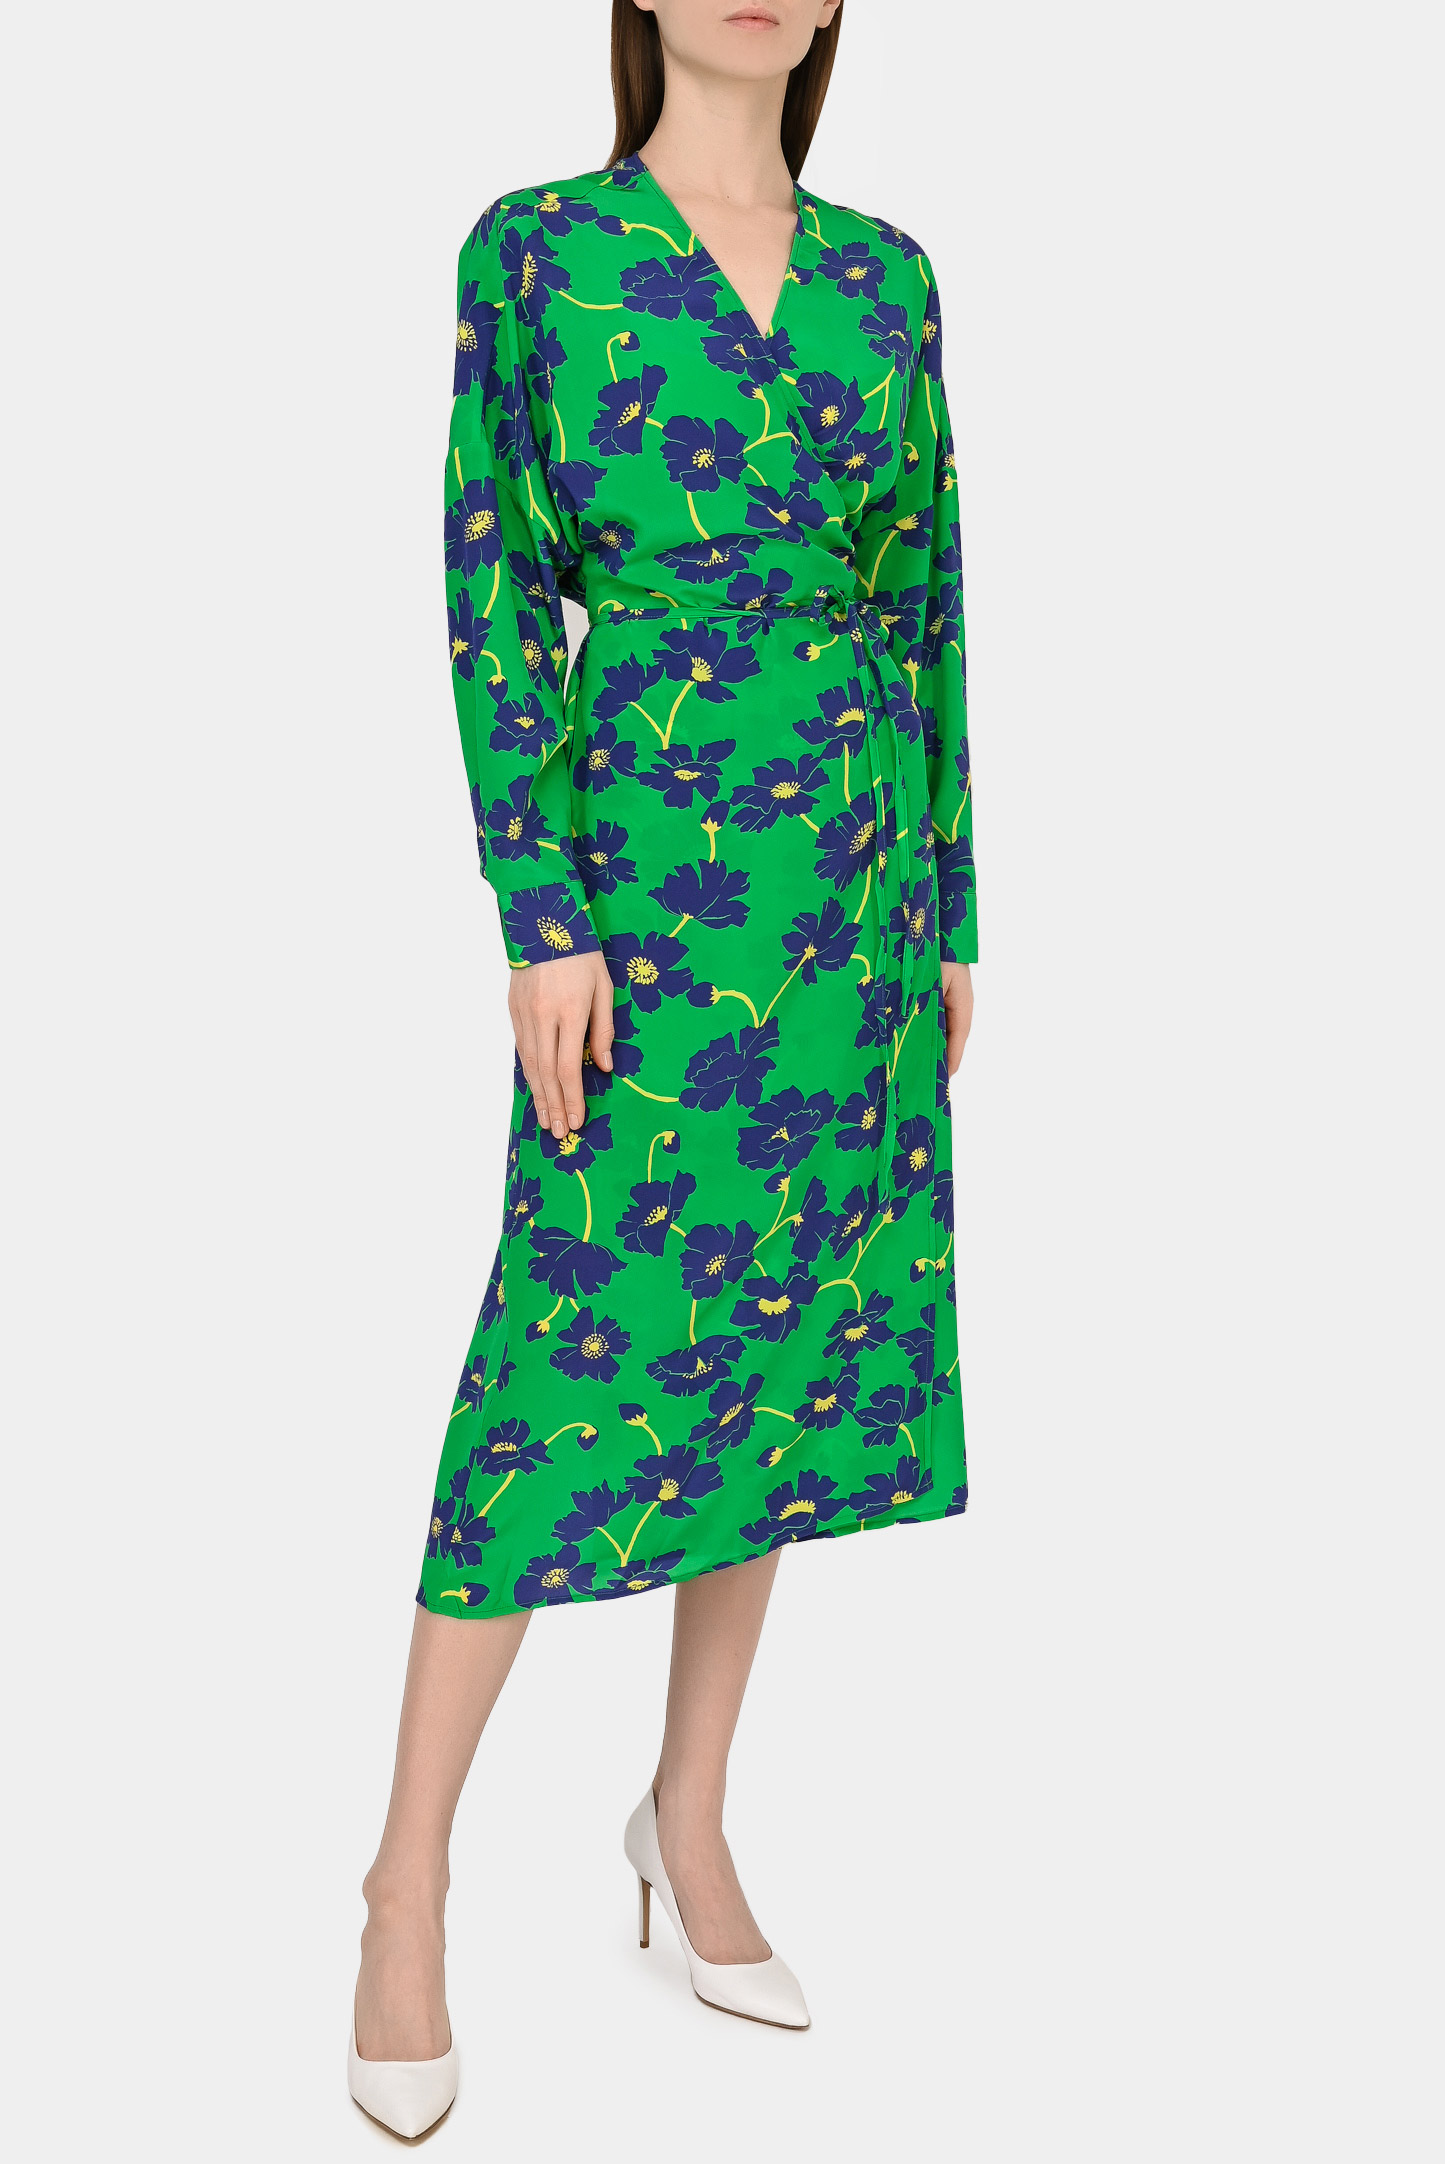 Платье P.A.R.O.S.H. D724283 SURPLUS, цвет: Зеленый, Женский